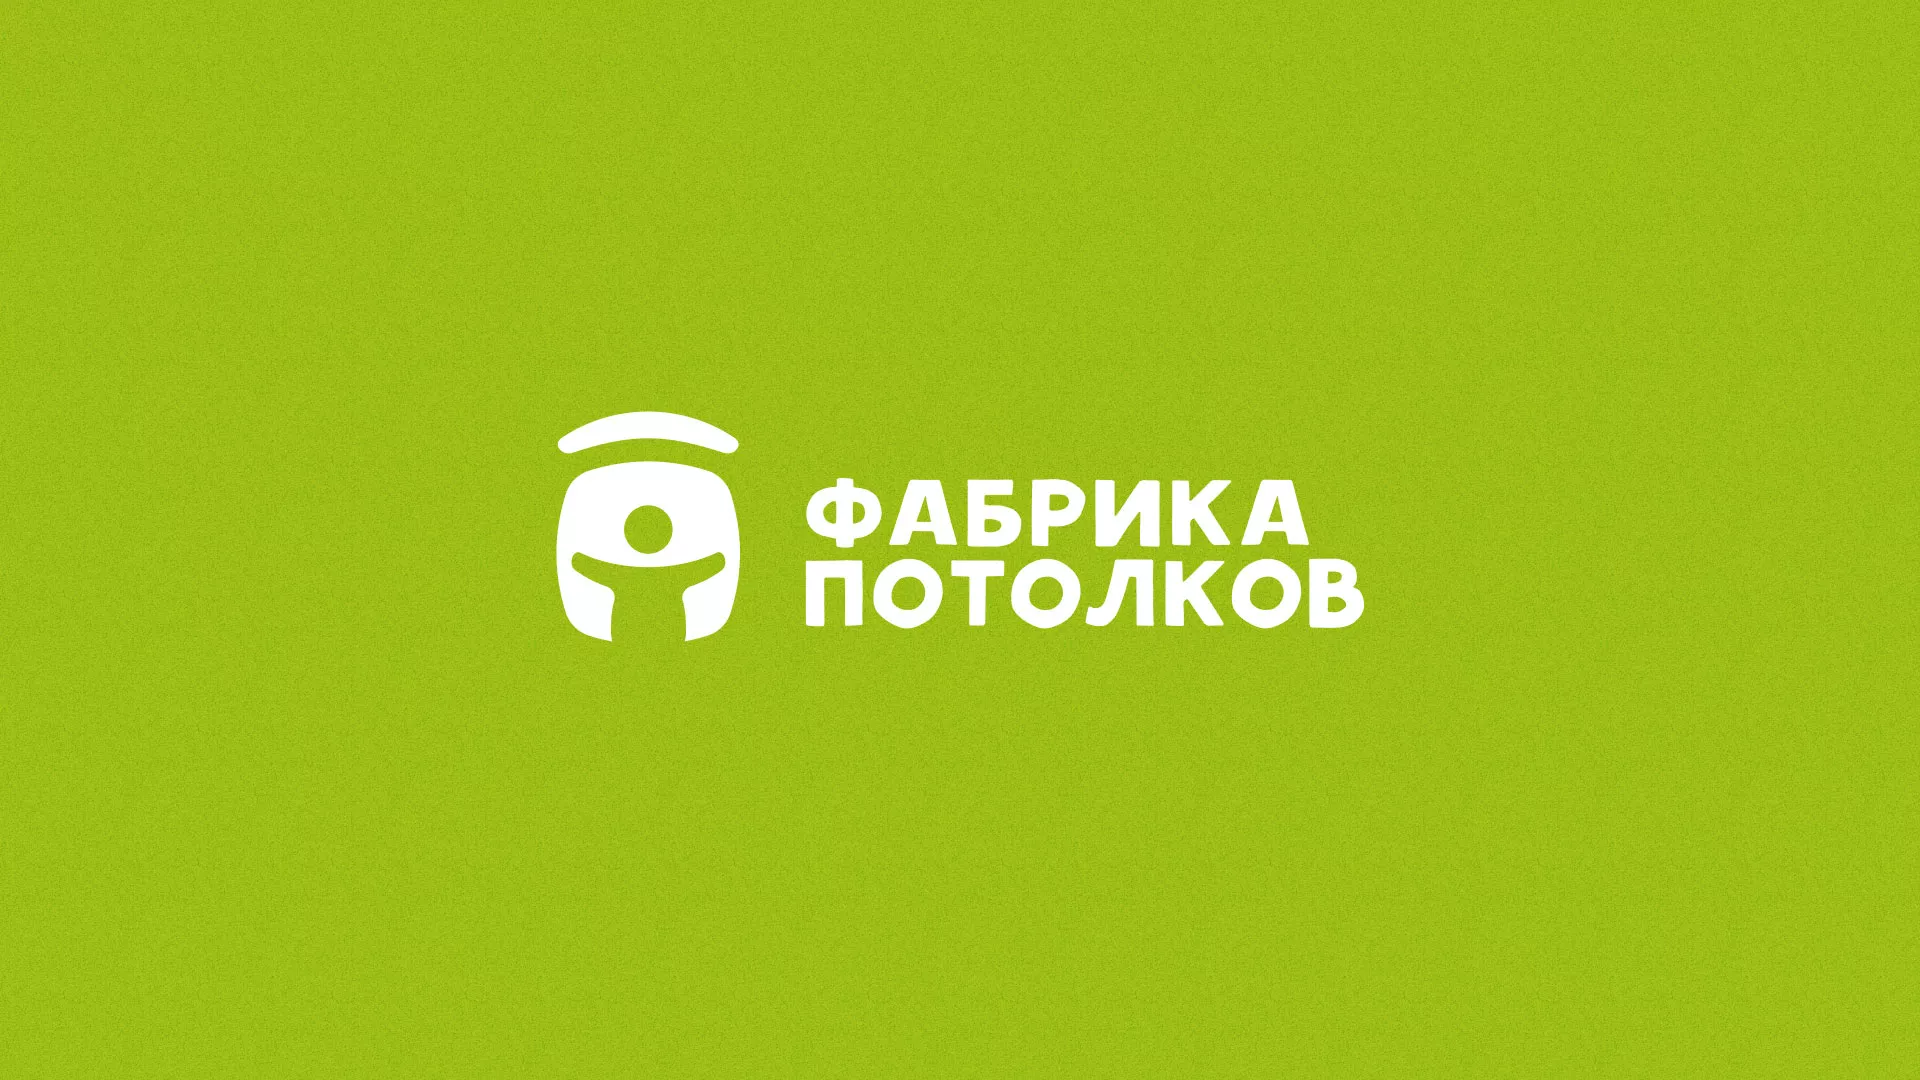 Разработка логотипа для производства натяжных потолков в Ликино-Дулево